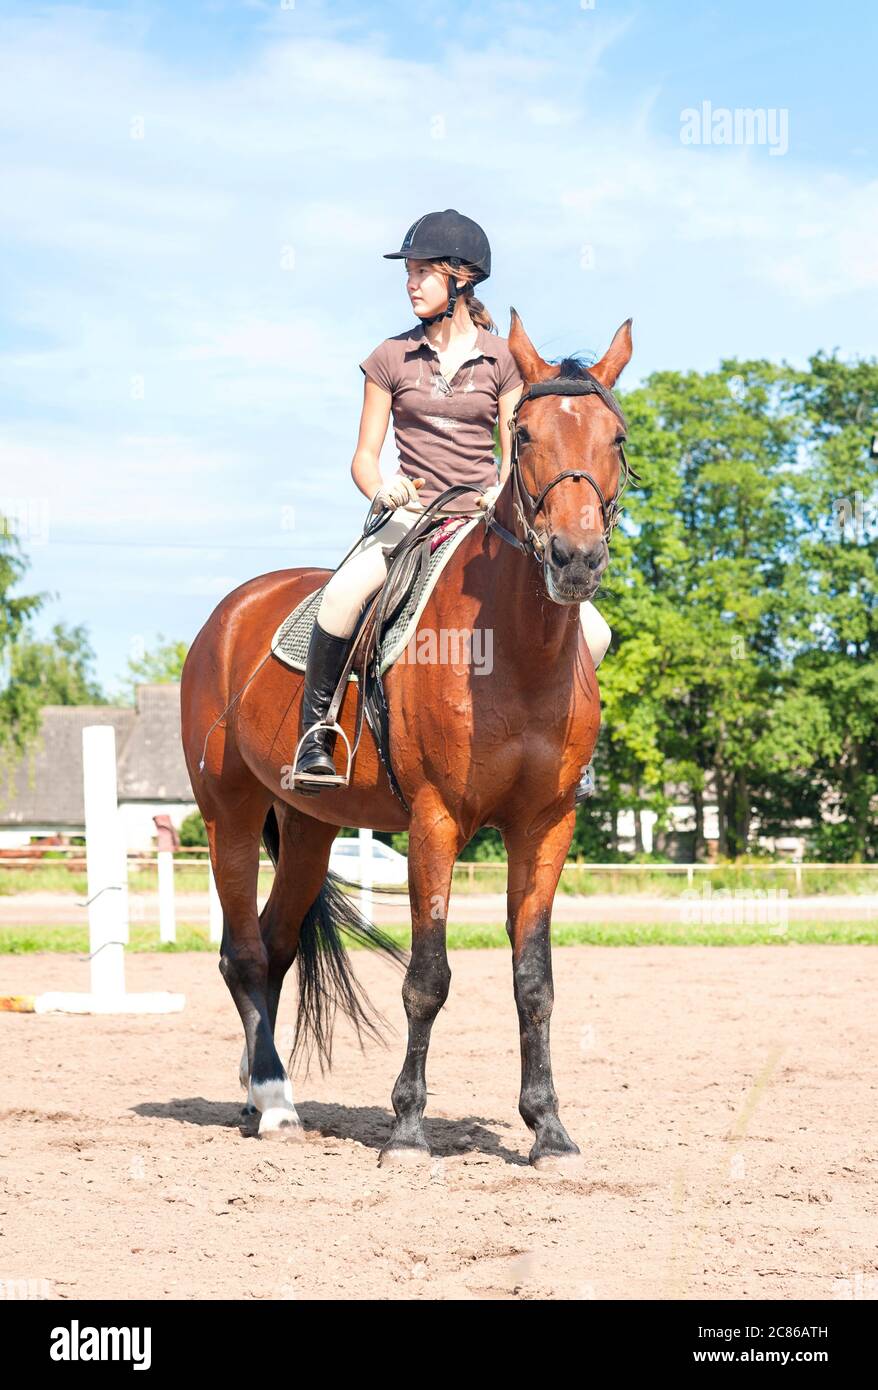 Adolescente caballo ecuestre caballo pura raza. Imagen vibrante de verano al aire libre. Foto de stock